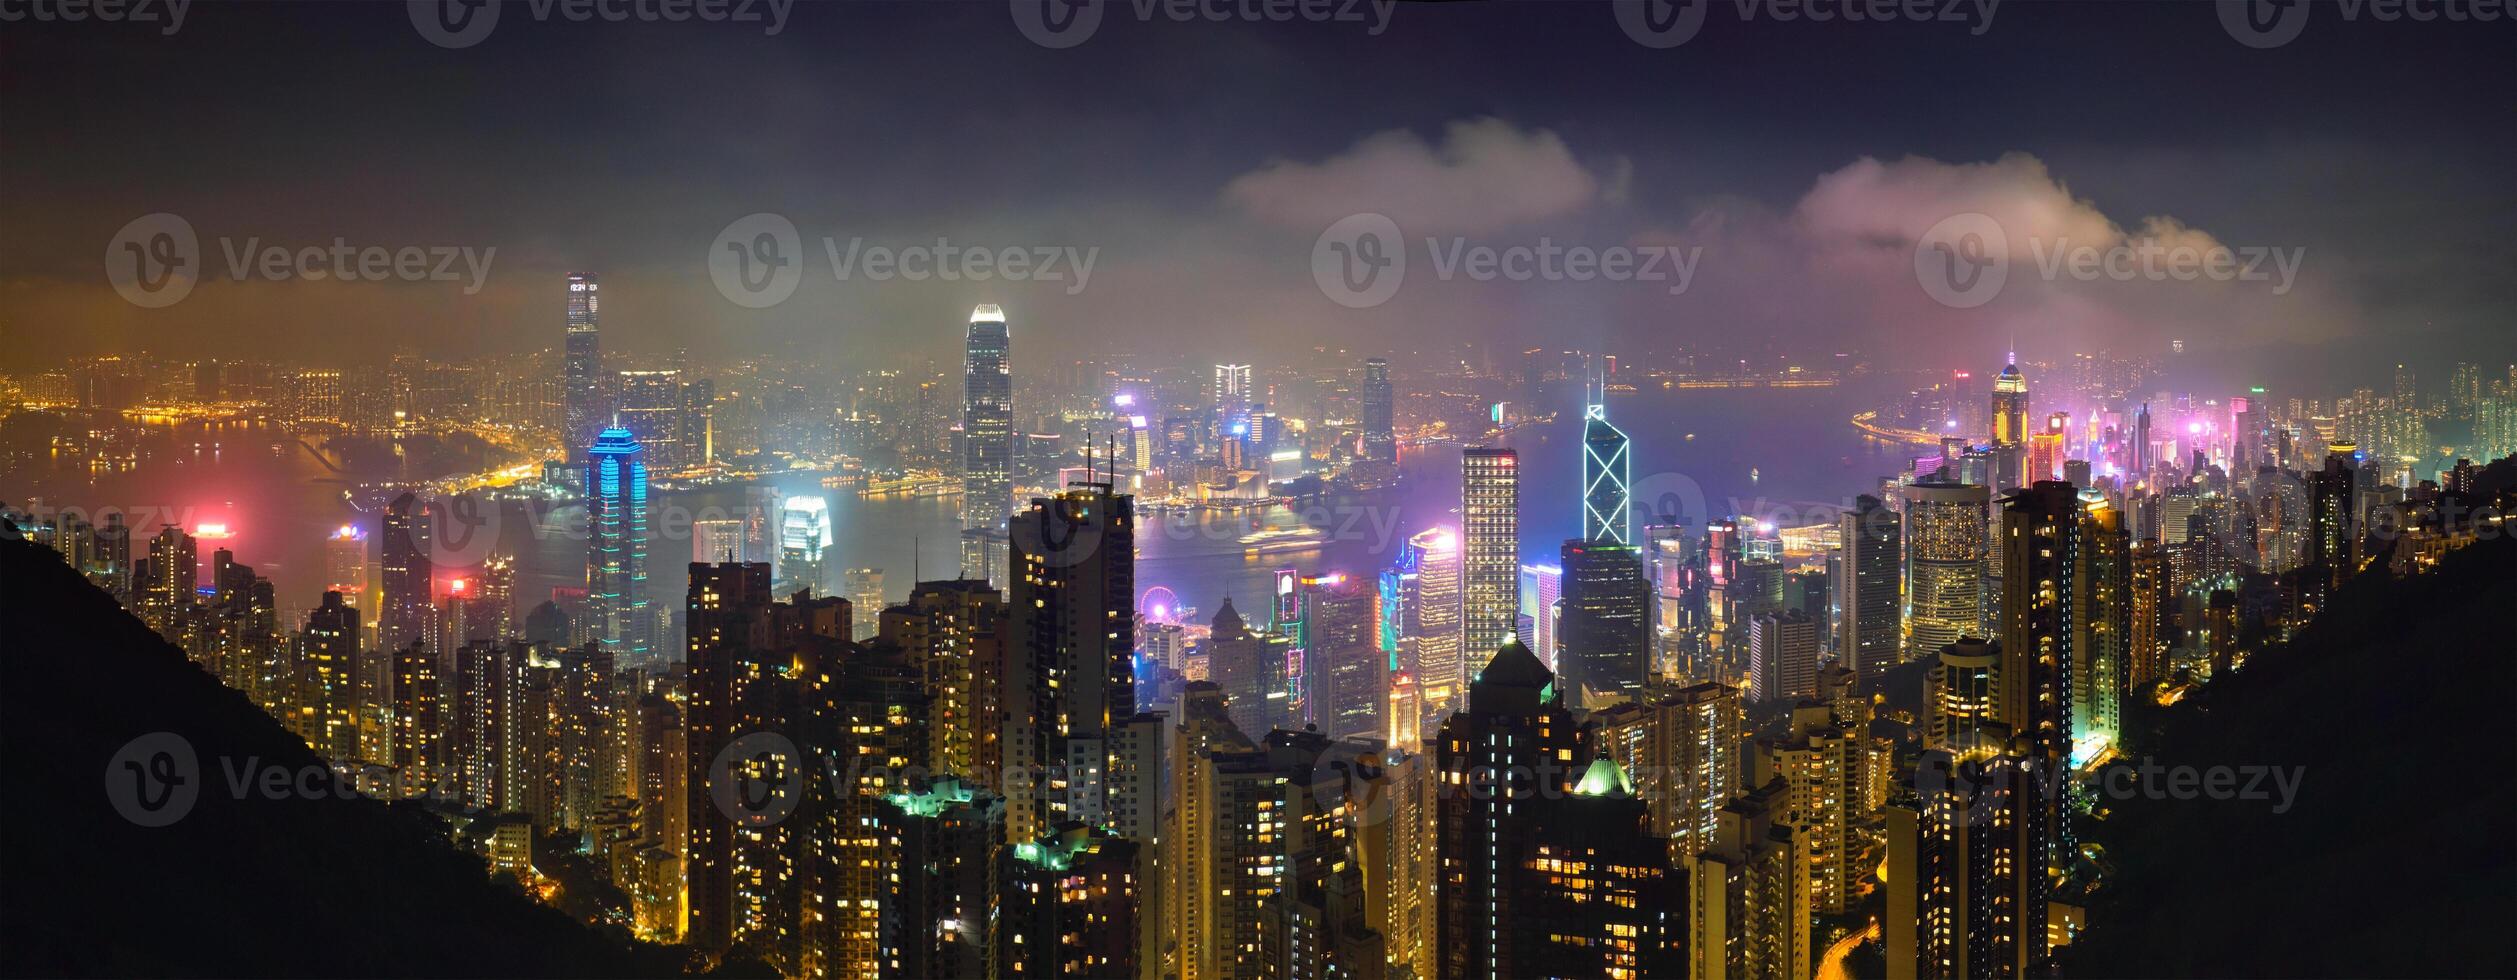 hong kong rascacielos horizonte paisaje urbano ver foto